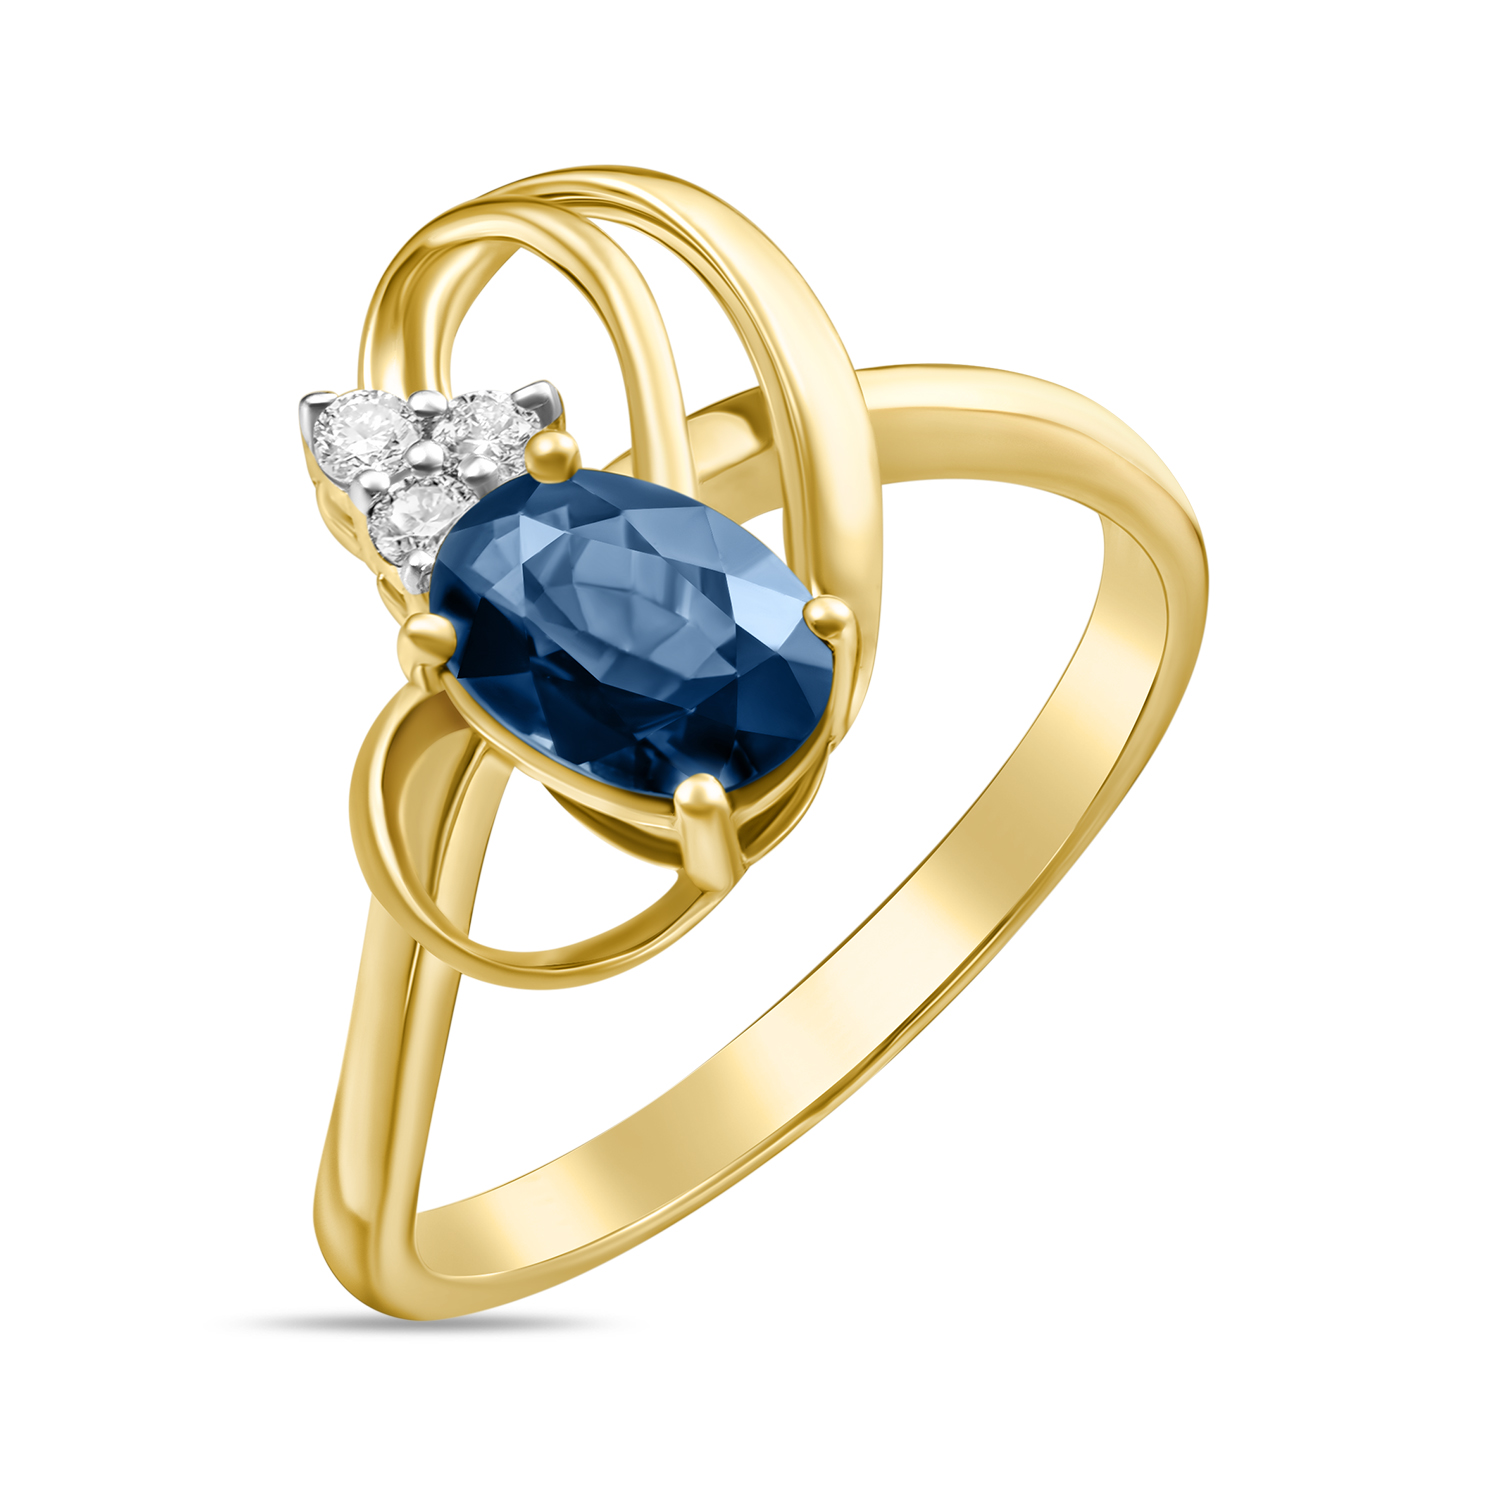 Кольца МЮЗ Золотое кольцо с бриллиантами и сапфиром кольца мюз золотое кольцо с бриллиантами и сапфиром